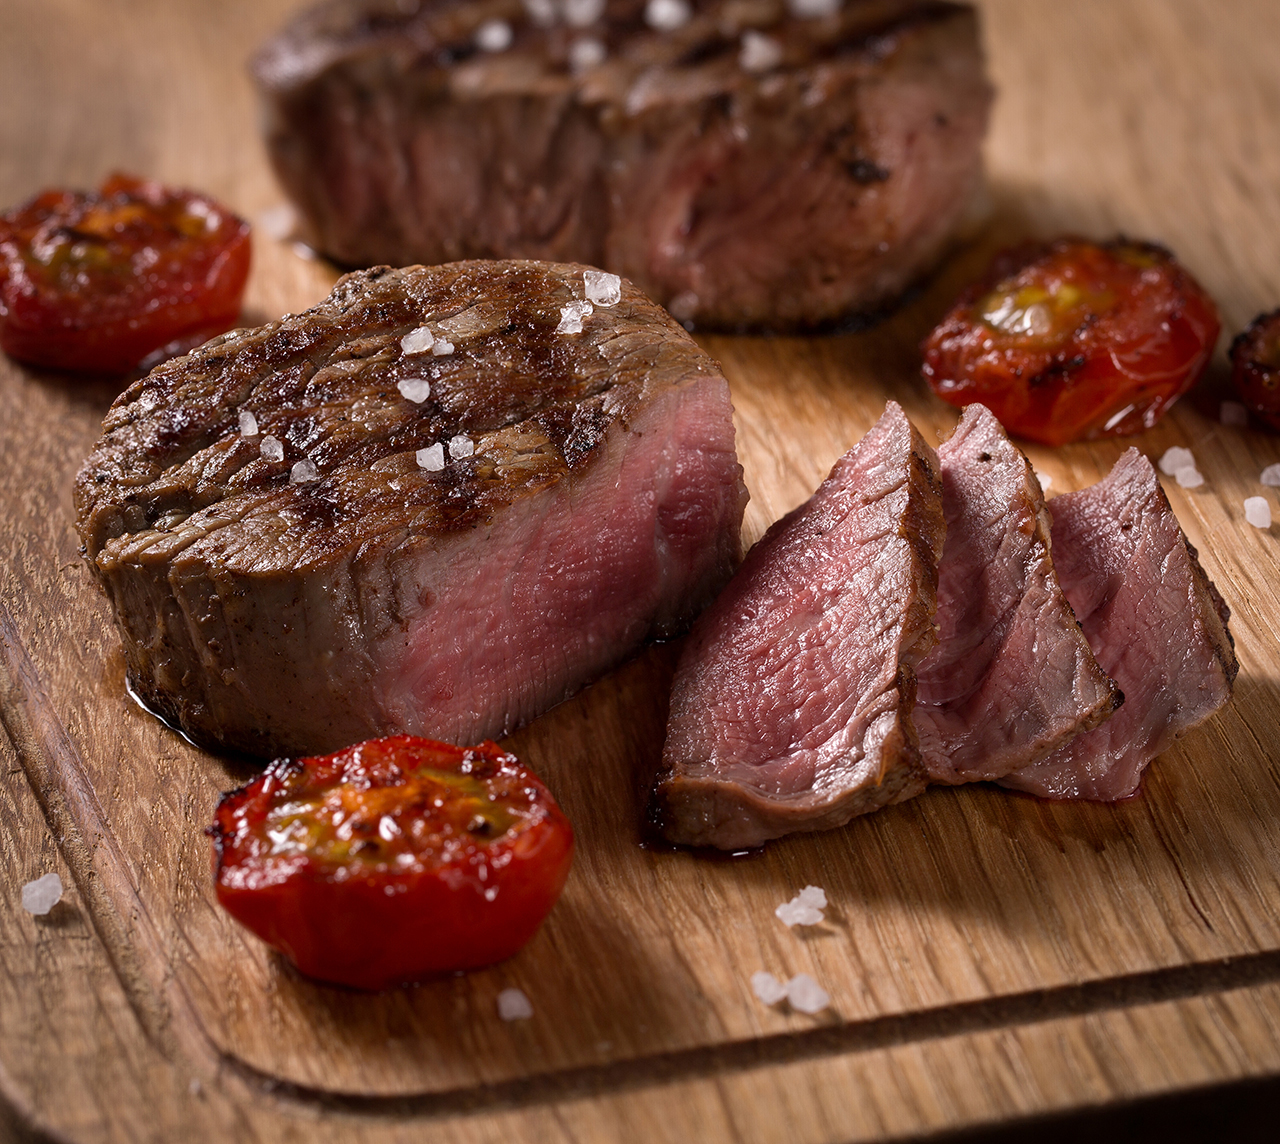 Фуд фотография стейка из говяжьей вырезки сделана для иллюстрации статьи о еде и профессиональной фотосъёмке еды.